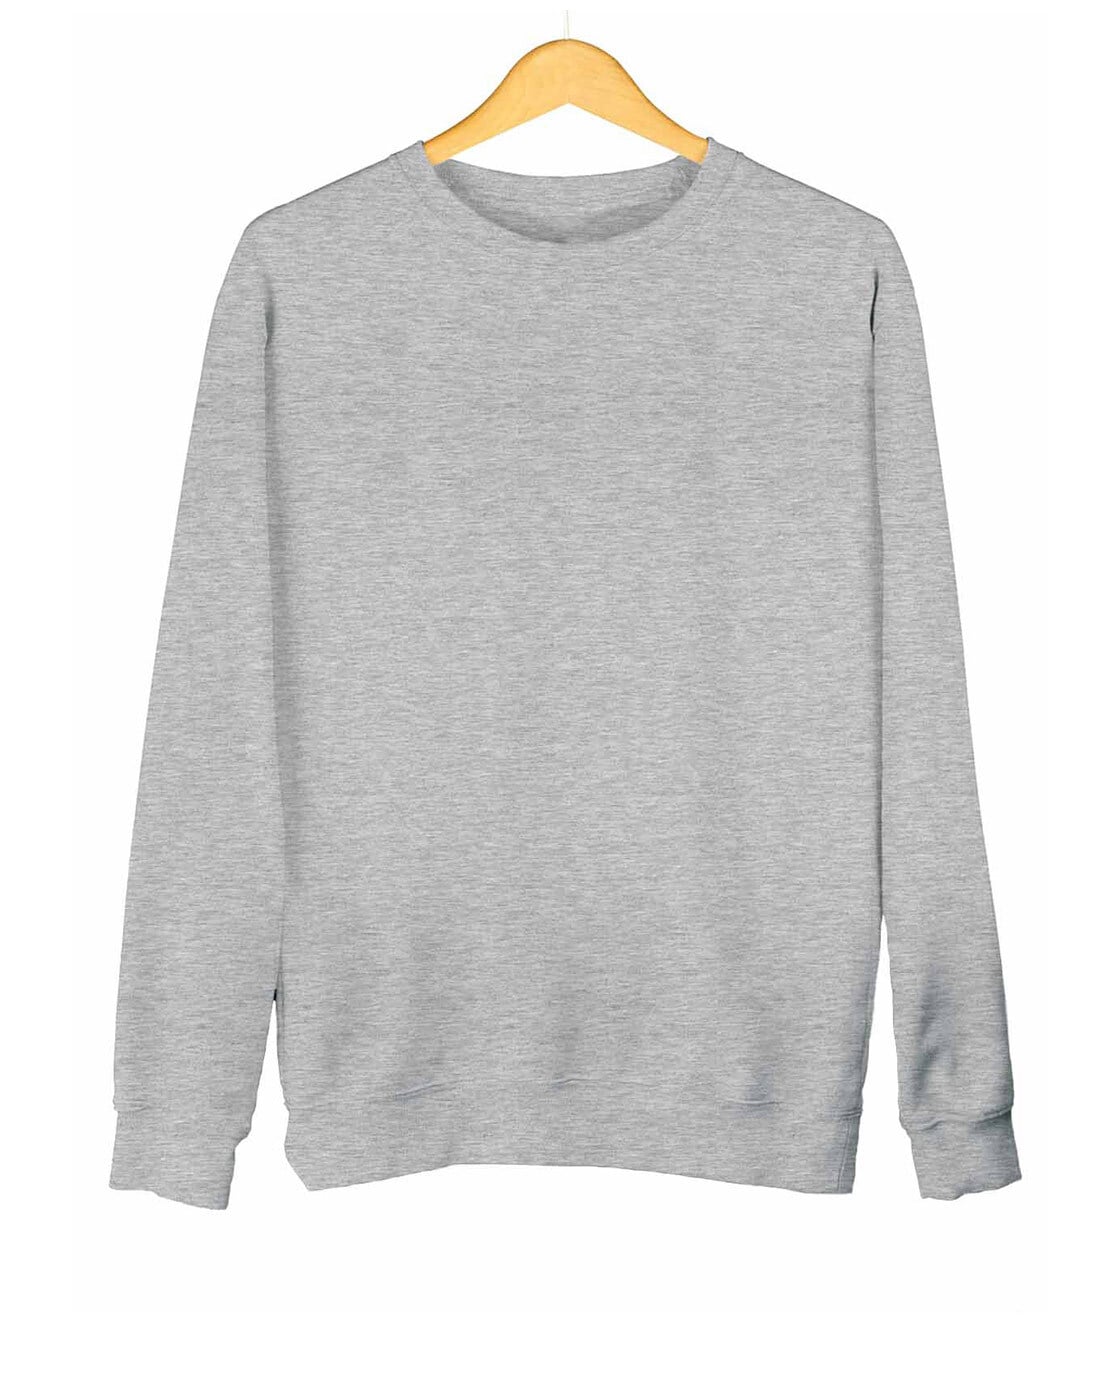 Buy Silver grey Sweatshirt & Hoodies for Men by Ghumakkad Online